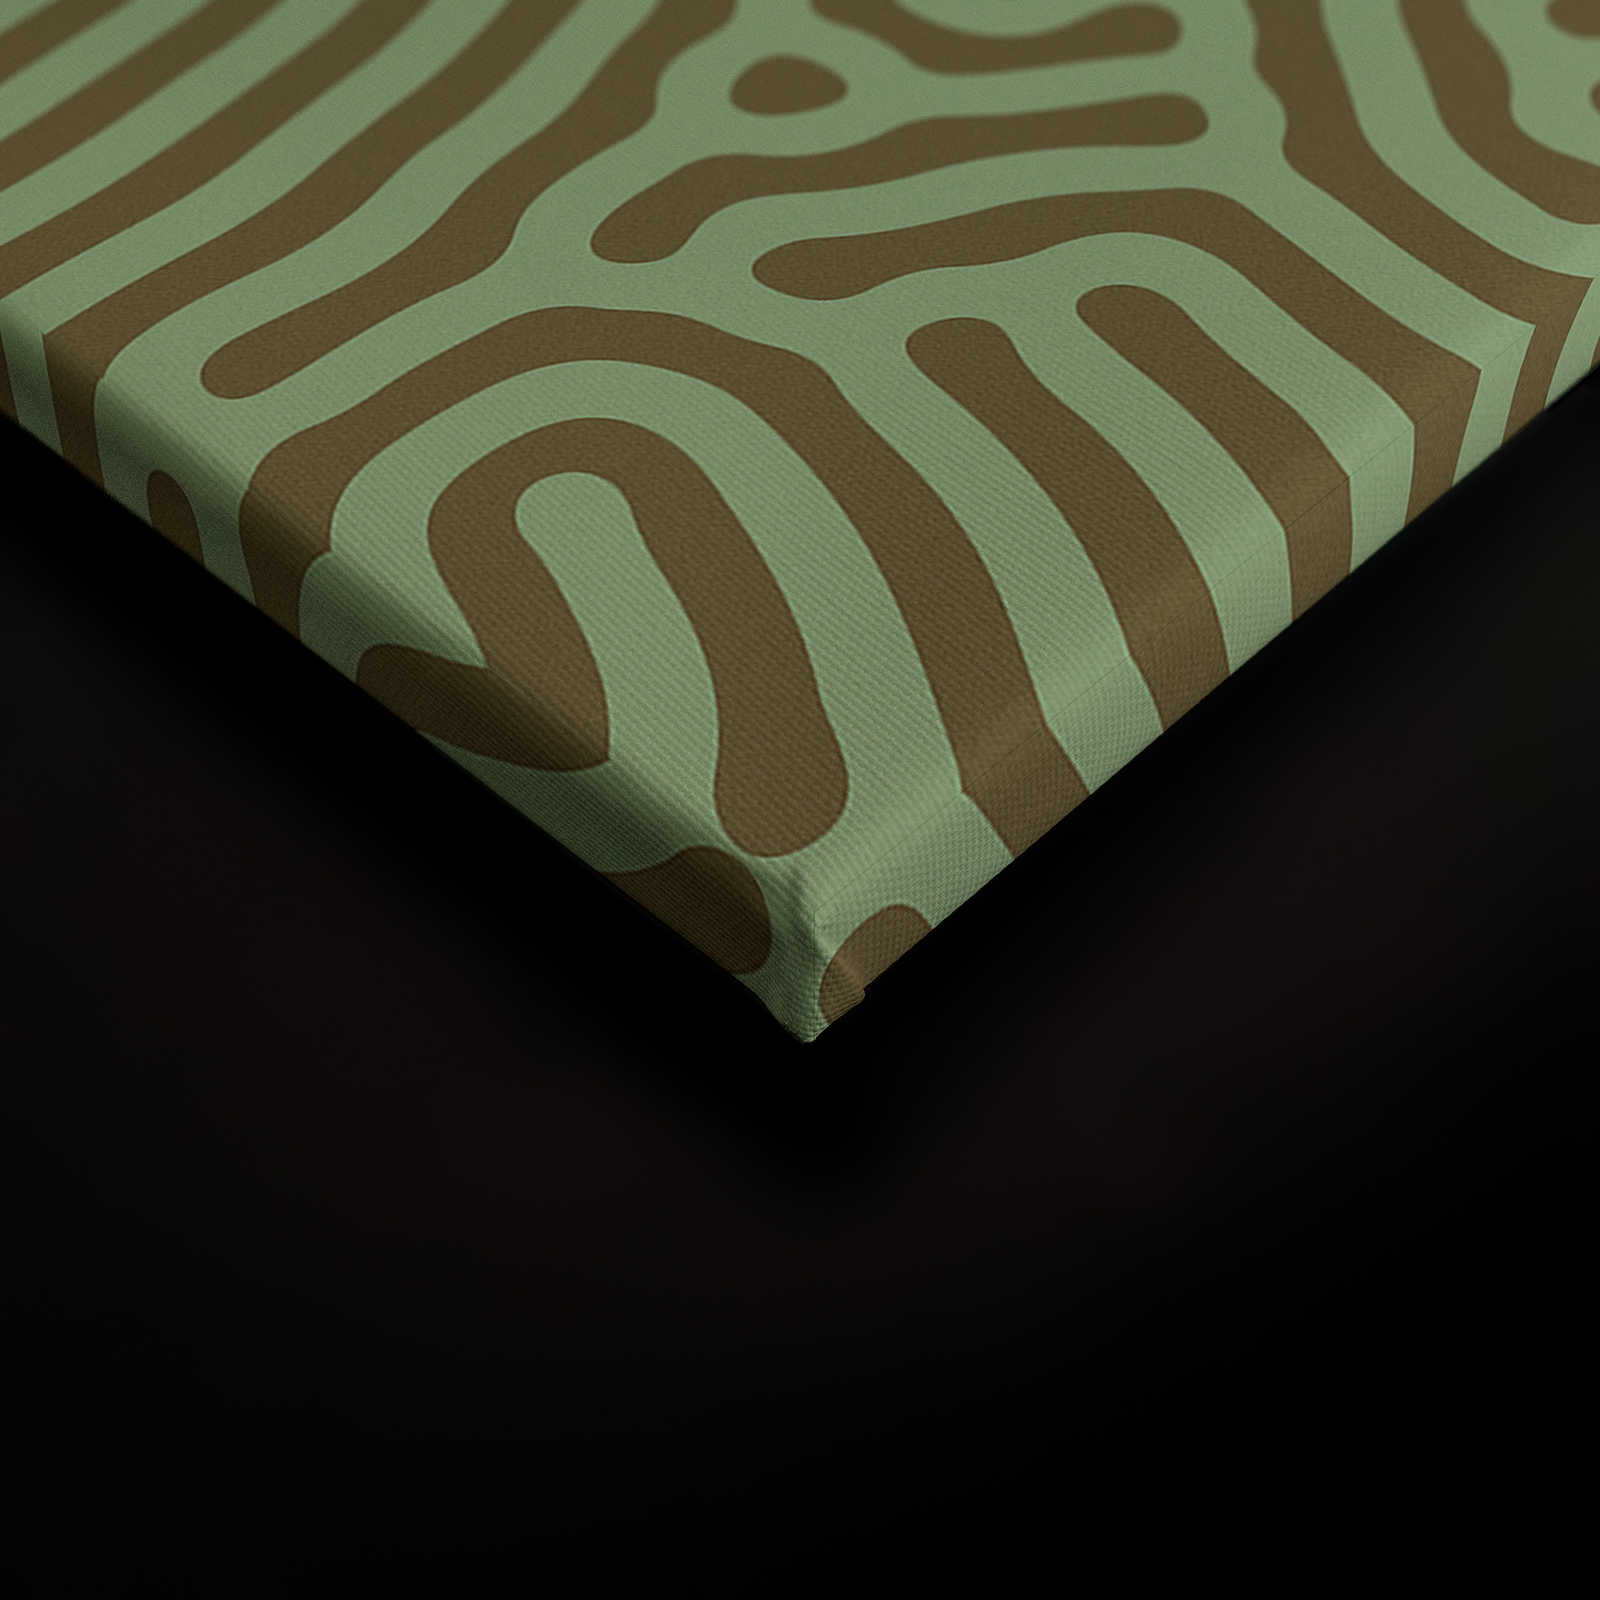             Sahel 1 - Toile verte motif labyrinthe vert sauge - 1,20 m x 0,80 m
        